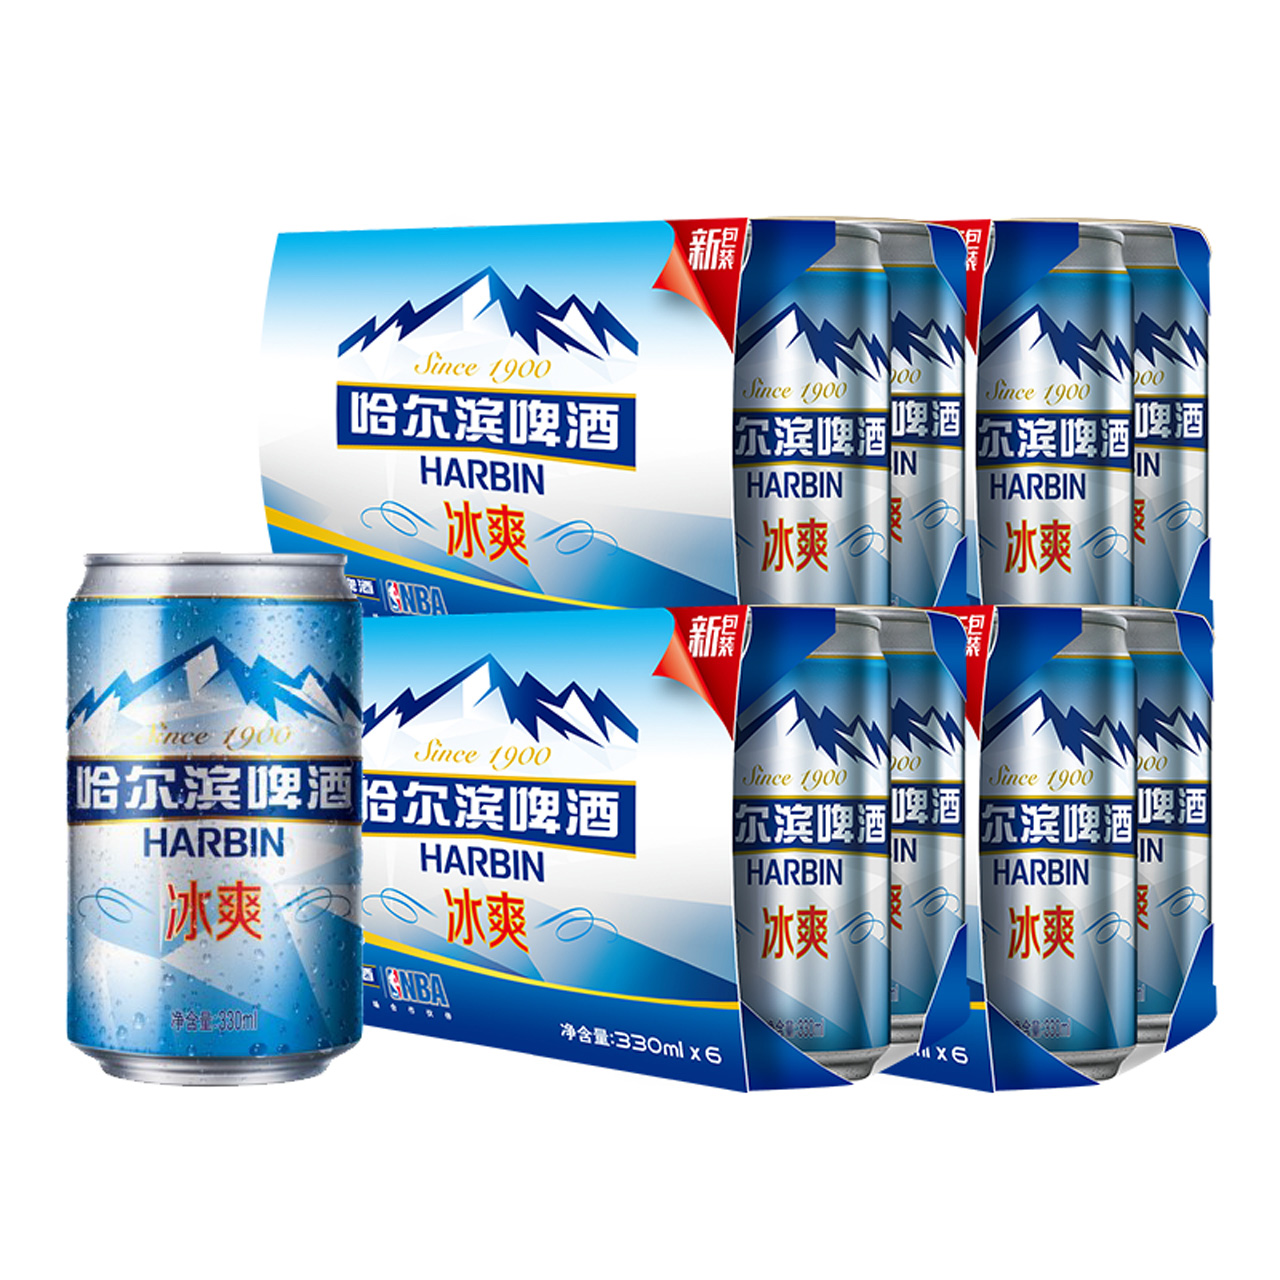 Harbin - Bottle on ice on Behance